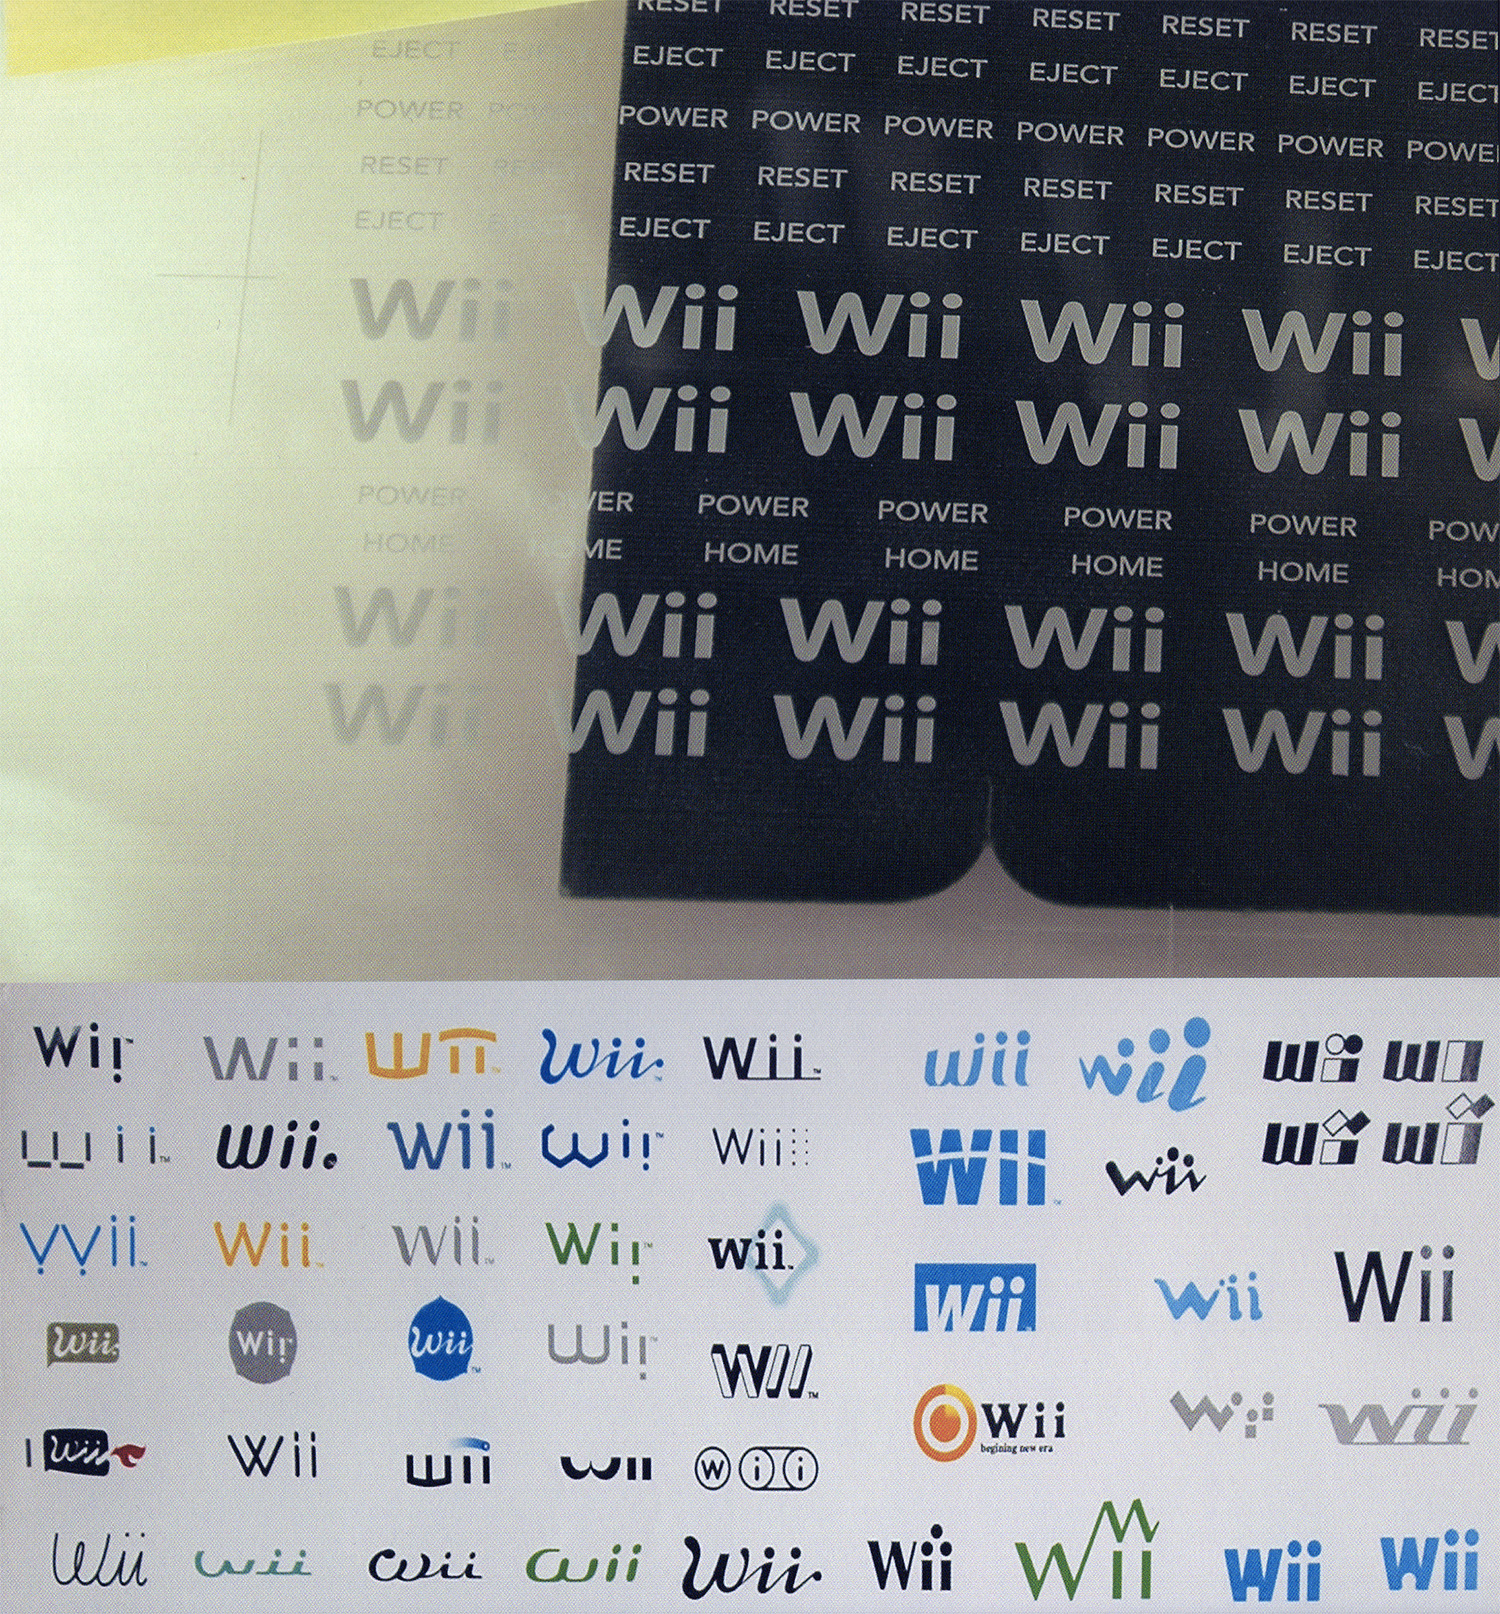 任天堂Wii主机大量Logo设计曝光 不乏可爱俏皮风格